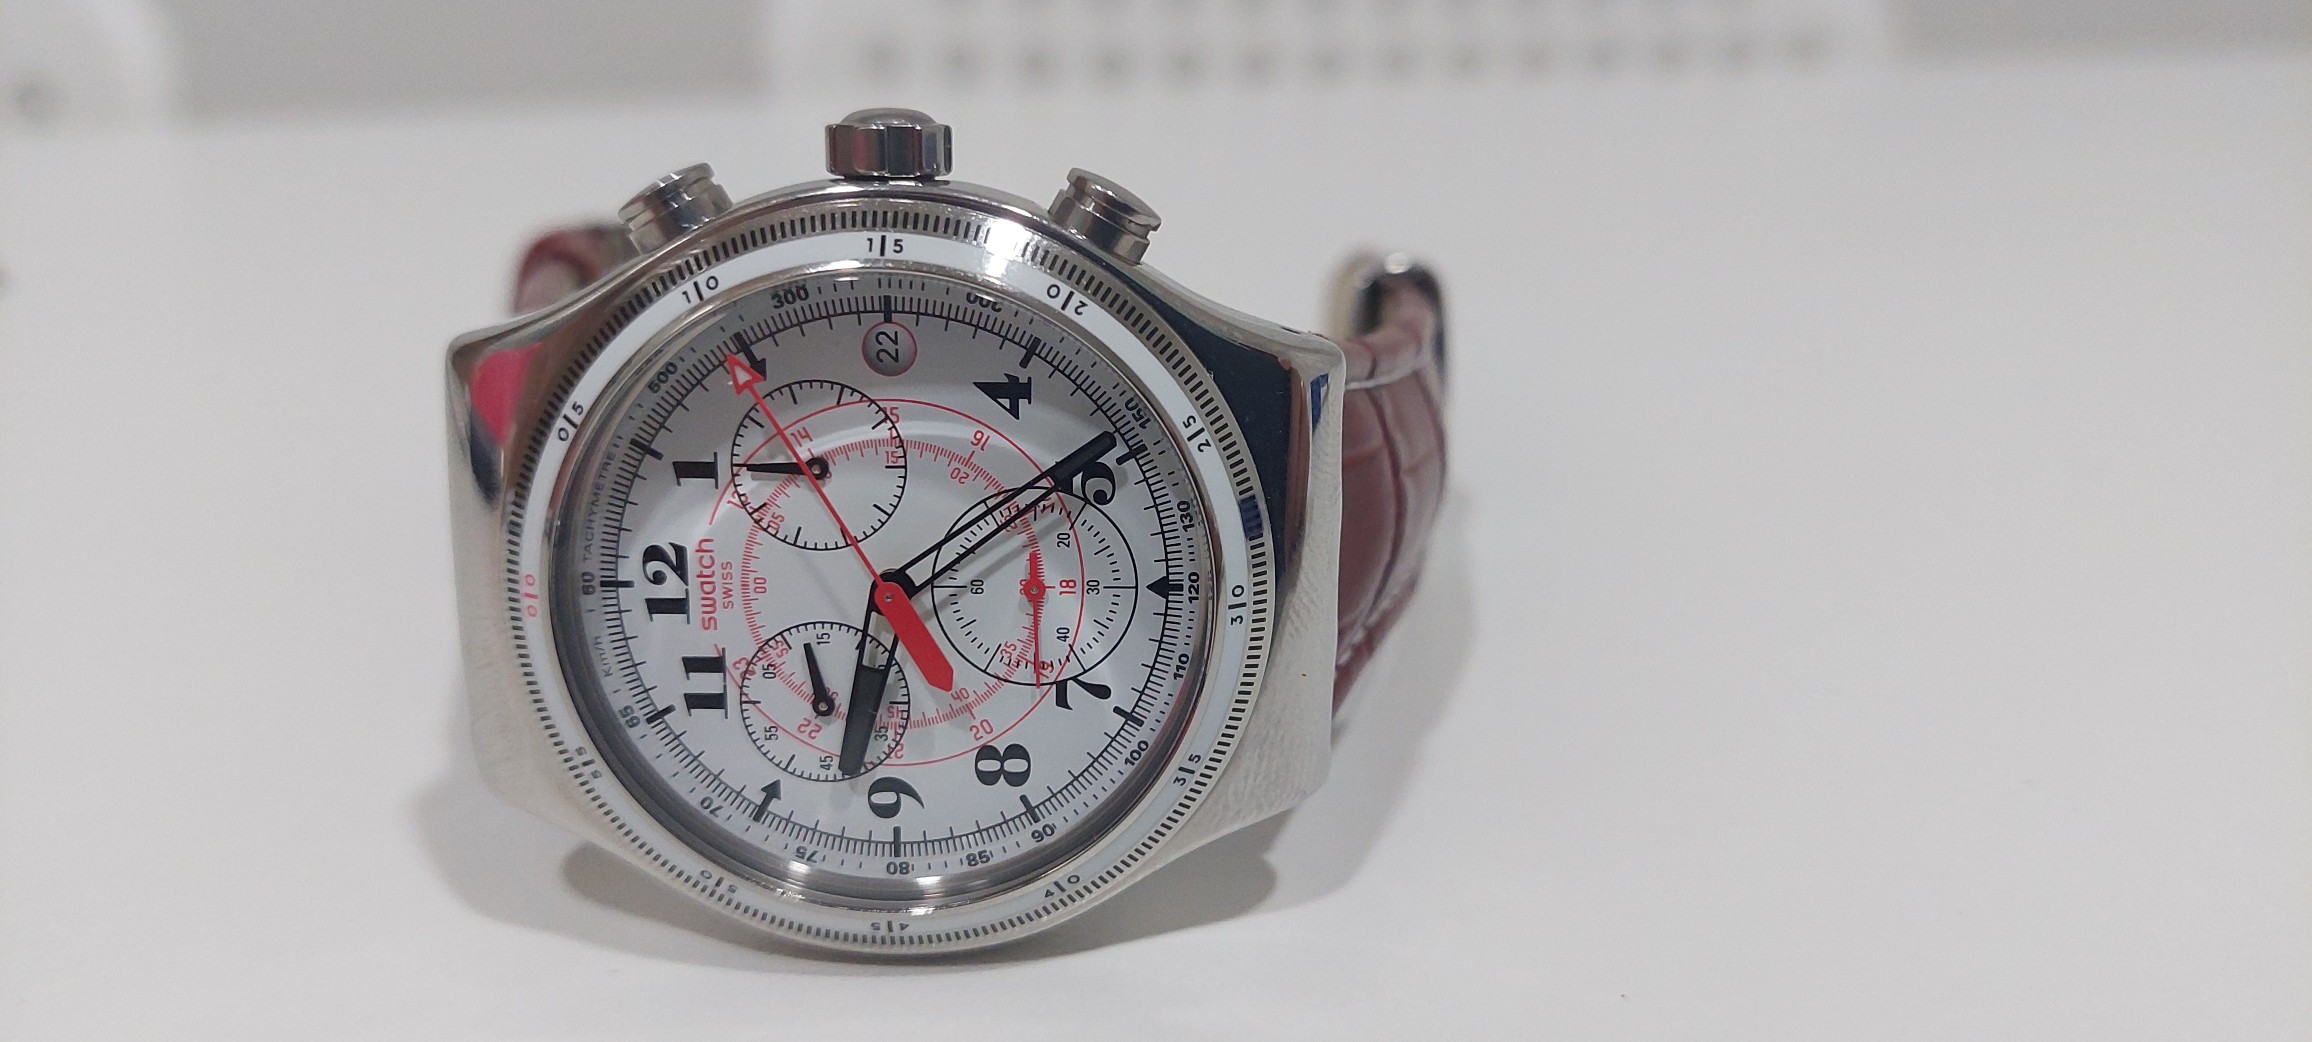 joyas, relojes y accesorios - Reloj swatch nuevo 0